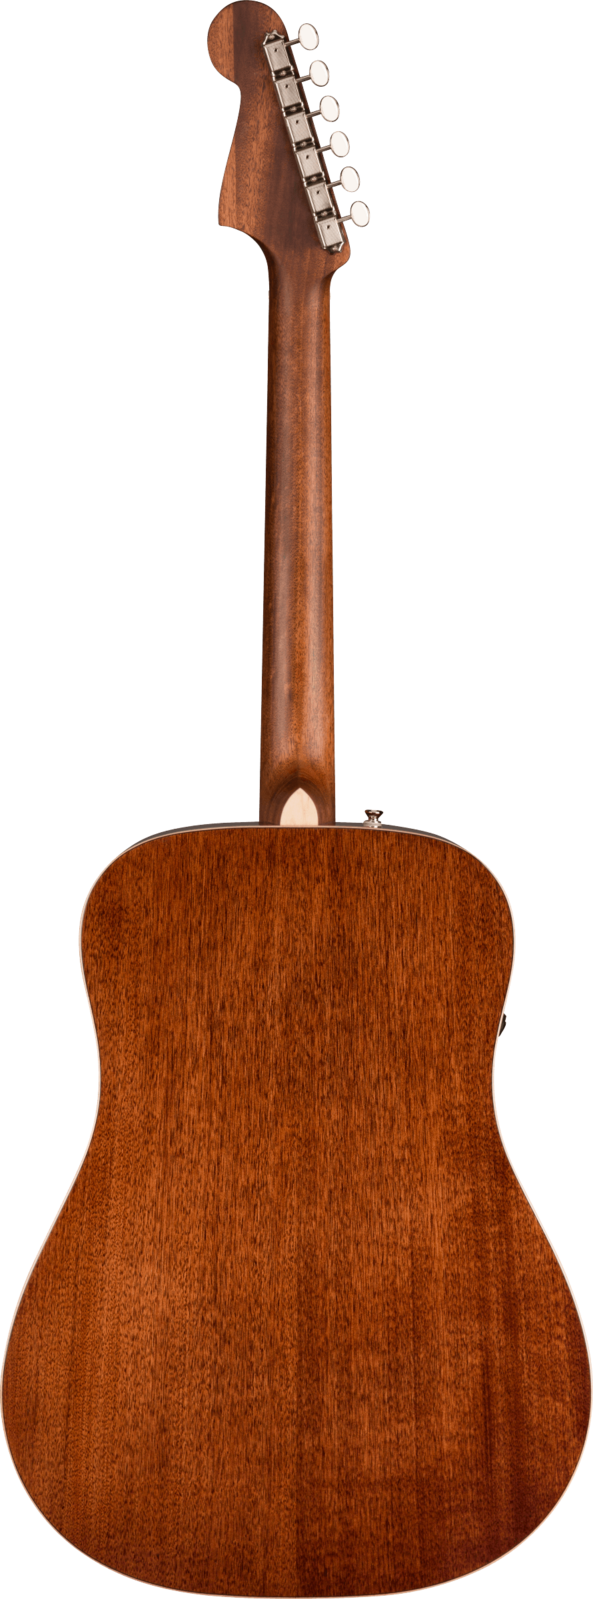 Fender Redondo Classic Aged Cognac Burst